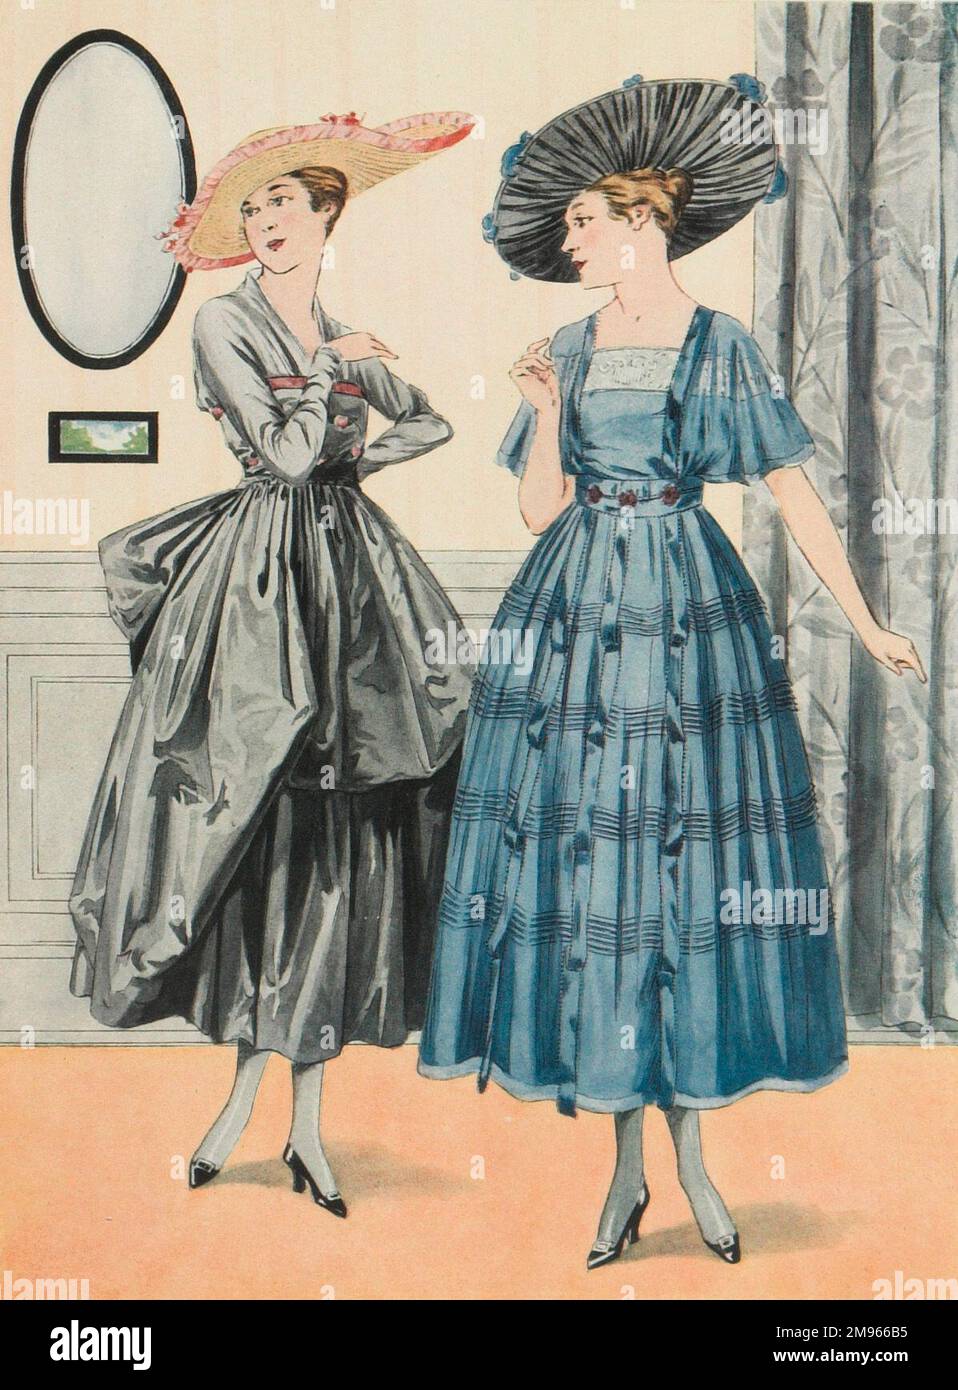 Deux femmes en costume de visite, avec des chapeaux à large bord plutôt élaborés, se préparent à attaquer leur hôte avec une vision de la mode. Banque D'Images